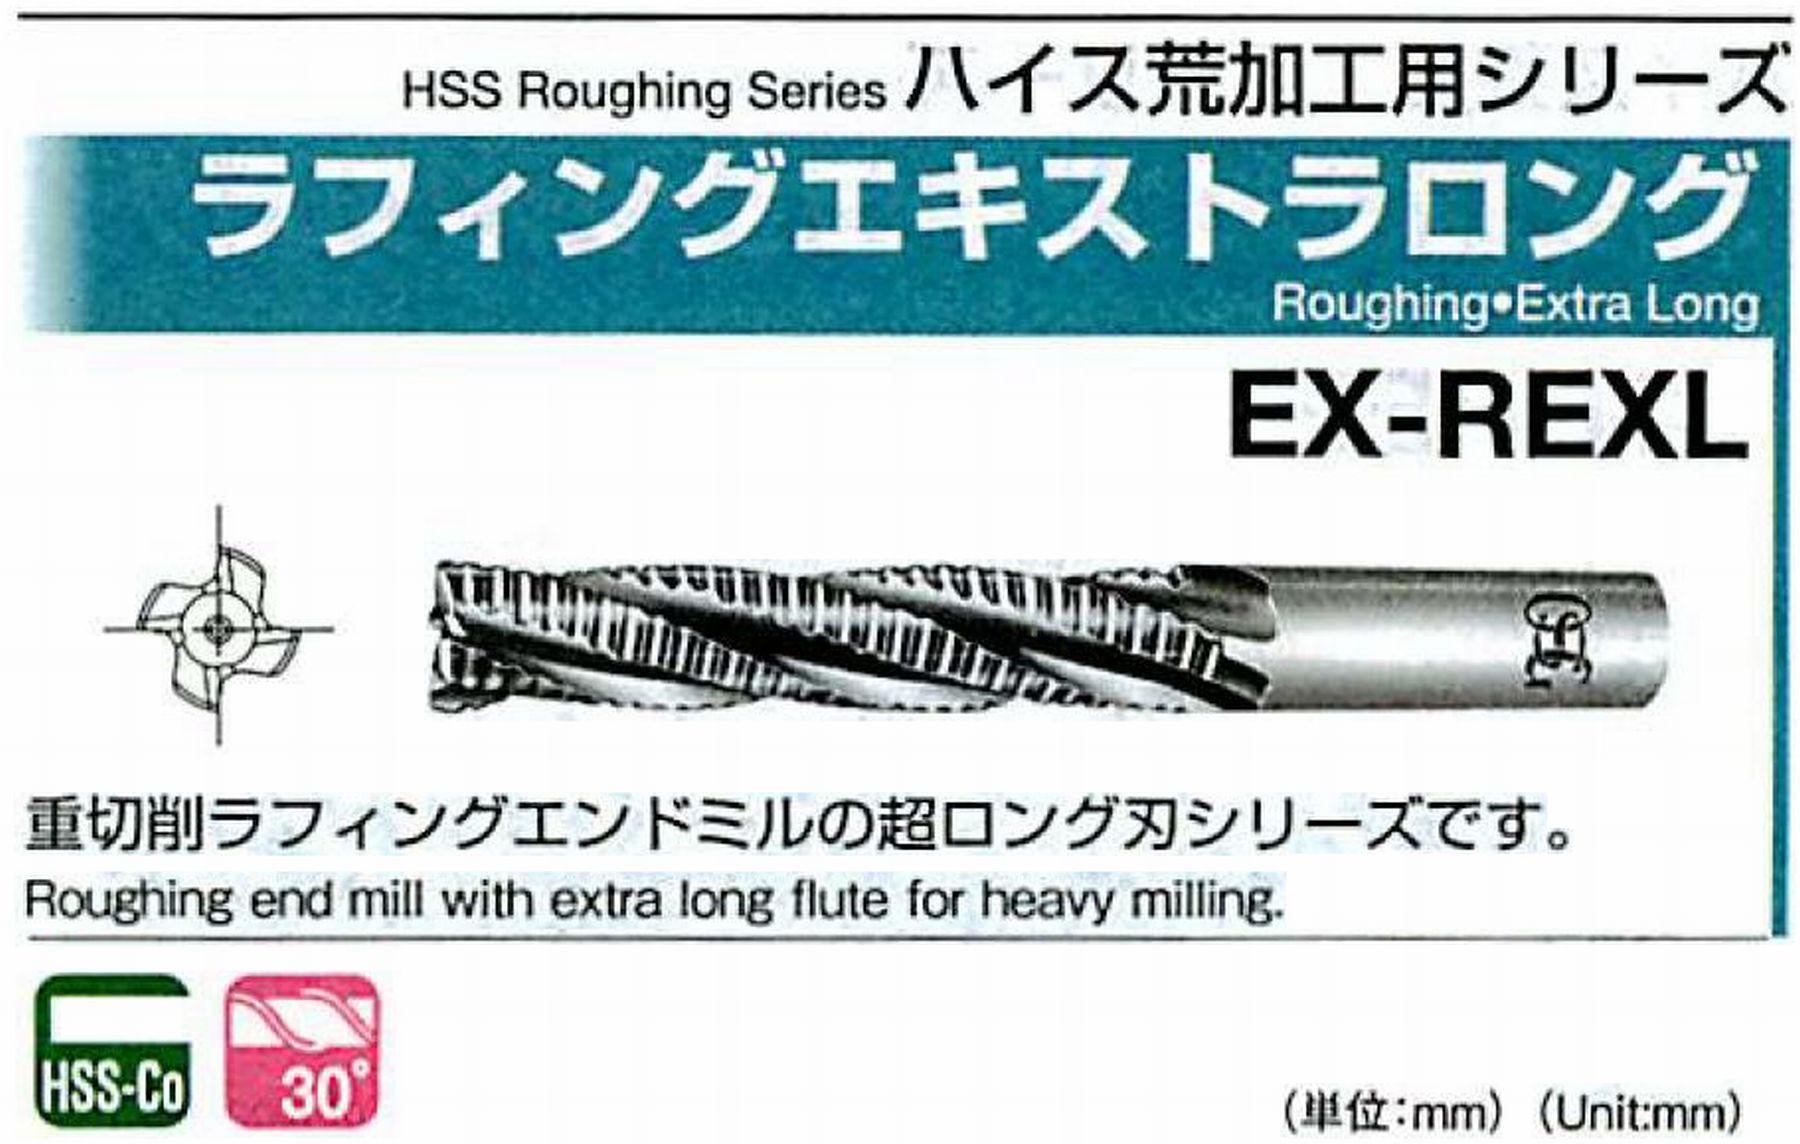 オーエスジー/OSG ラフィングエキストラ ロング EX-REXL 外径25 全長235 刃長150 シャンク径25mm 刃数5